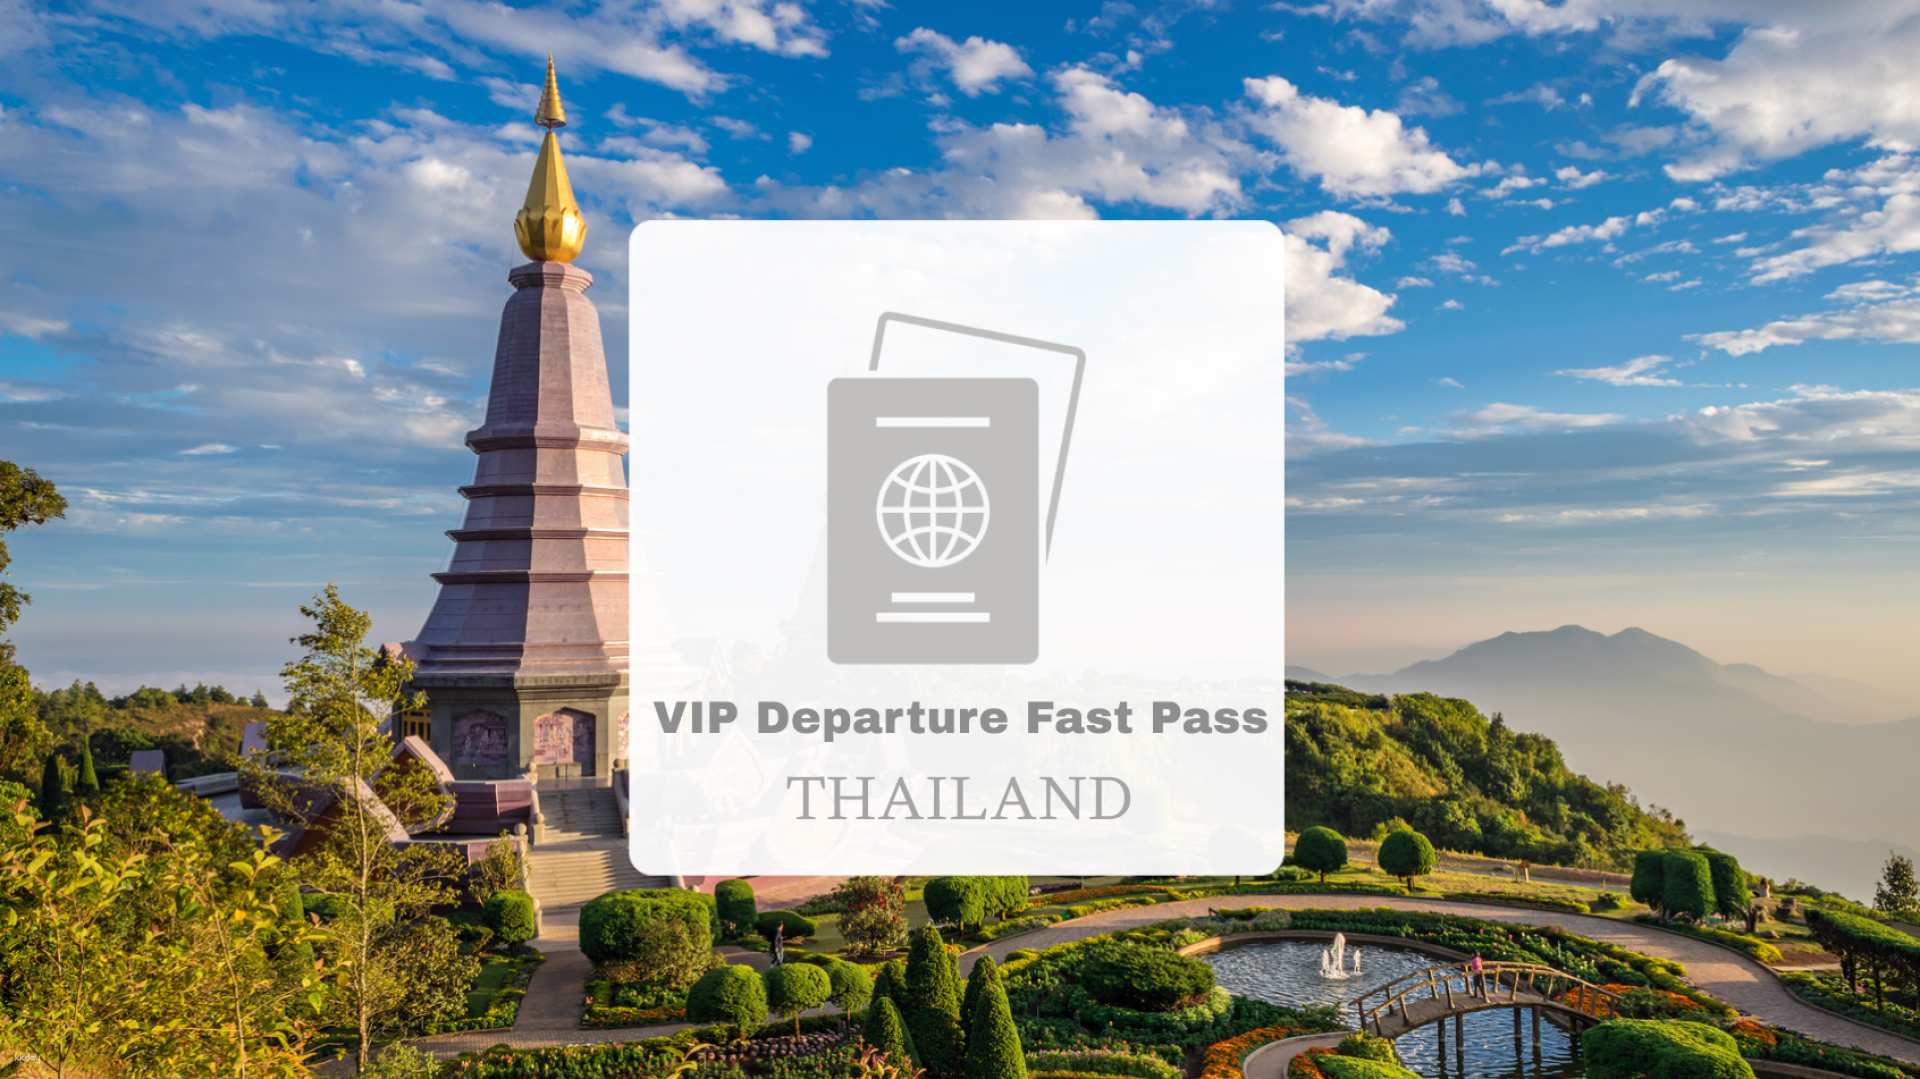 泰國-曼谷機場 BKK 出境快速尊榮接待服務| 限時優惠中